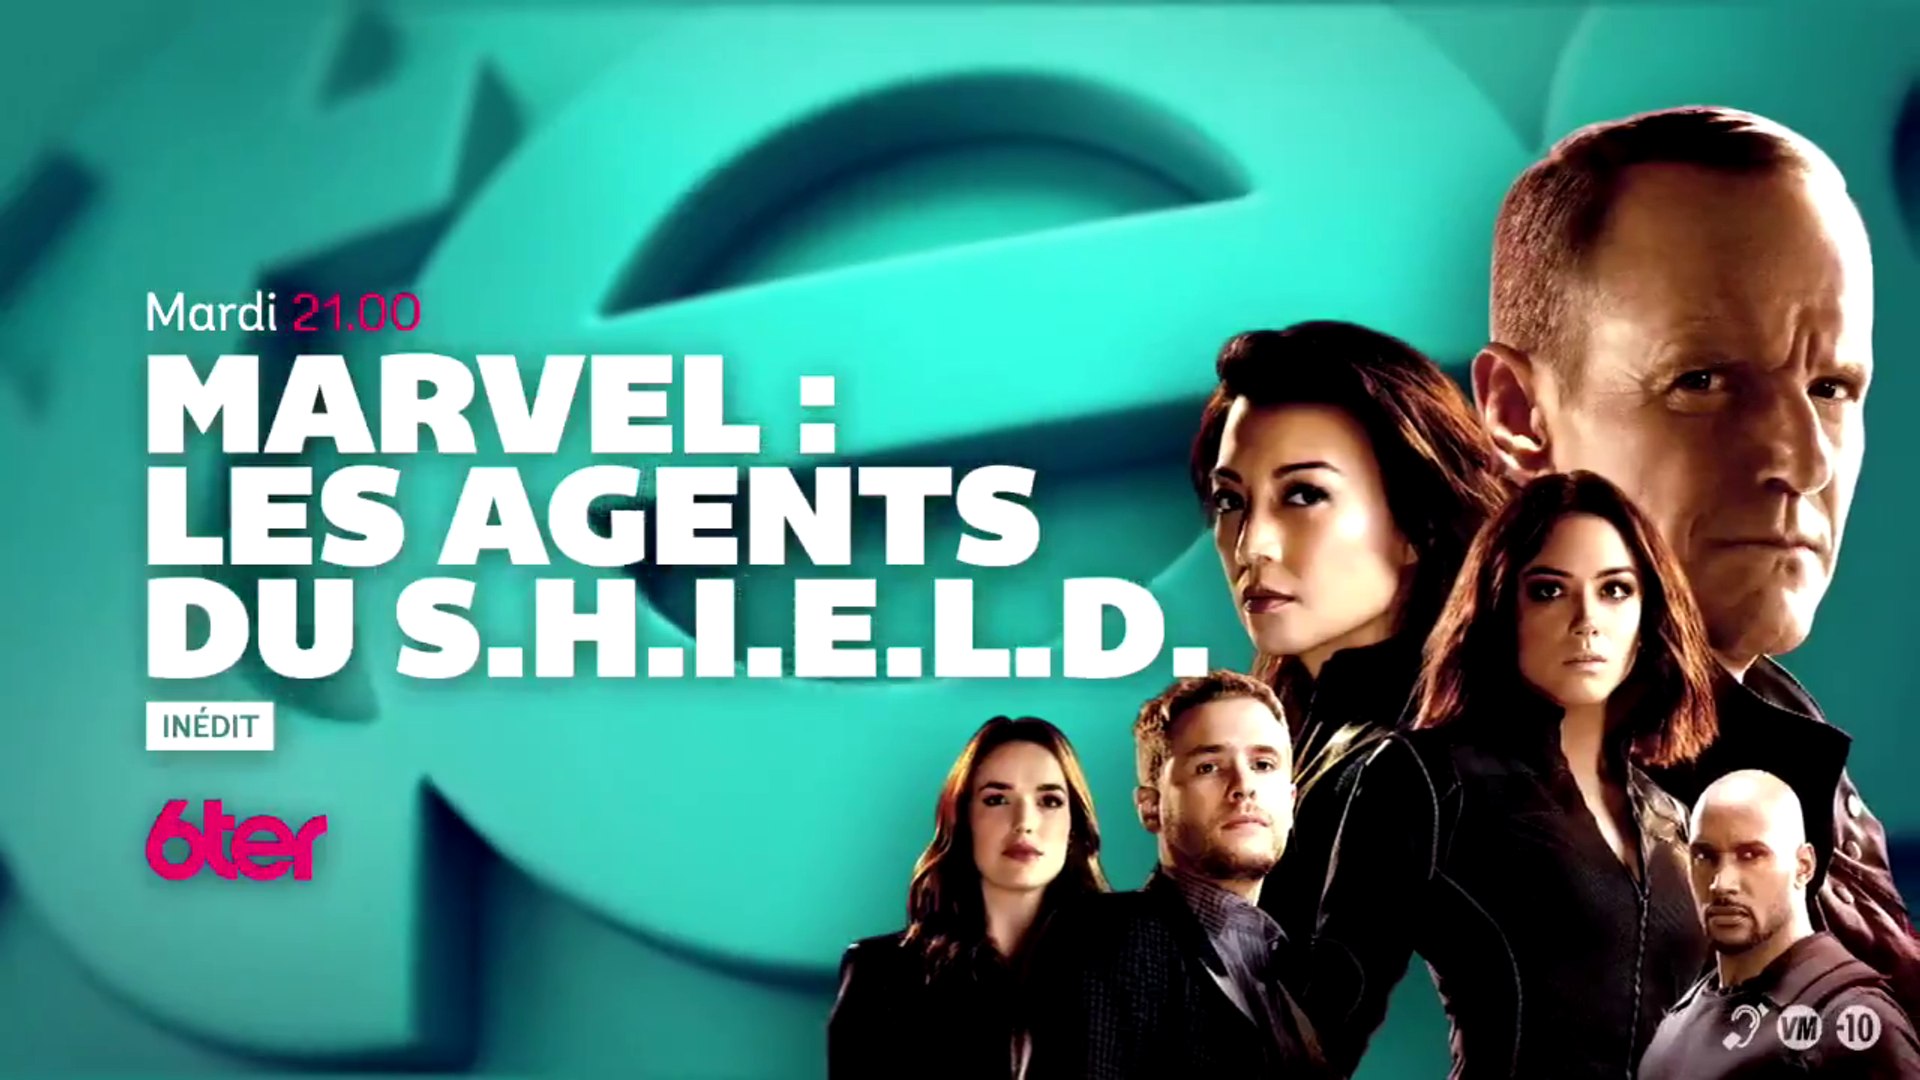 Marvel - Les agents du S.H.I.E.L.D. - saison 4 - 6ter - Vidéo Dailymotion